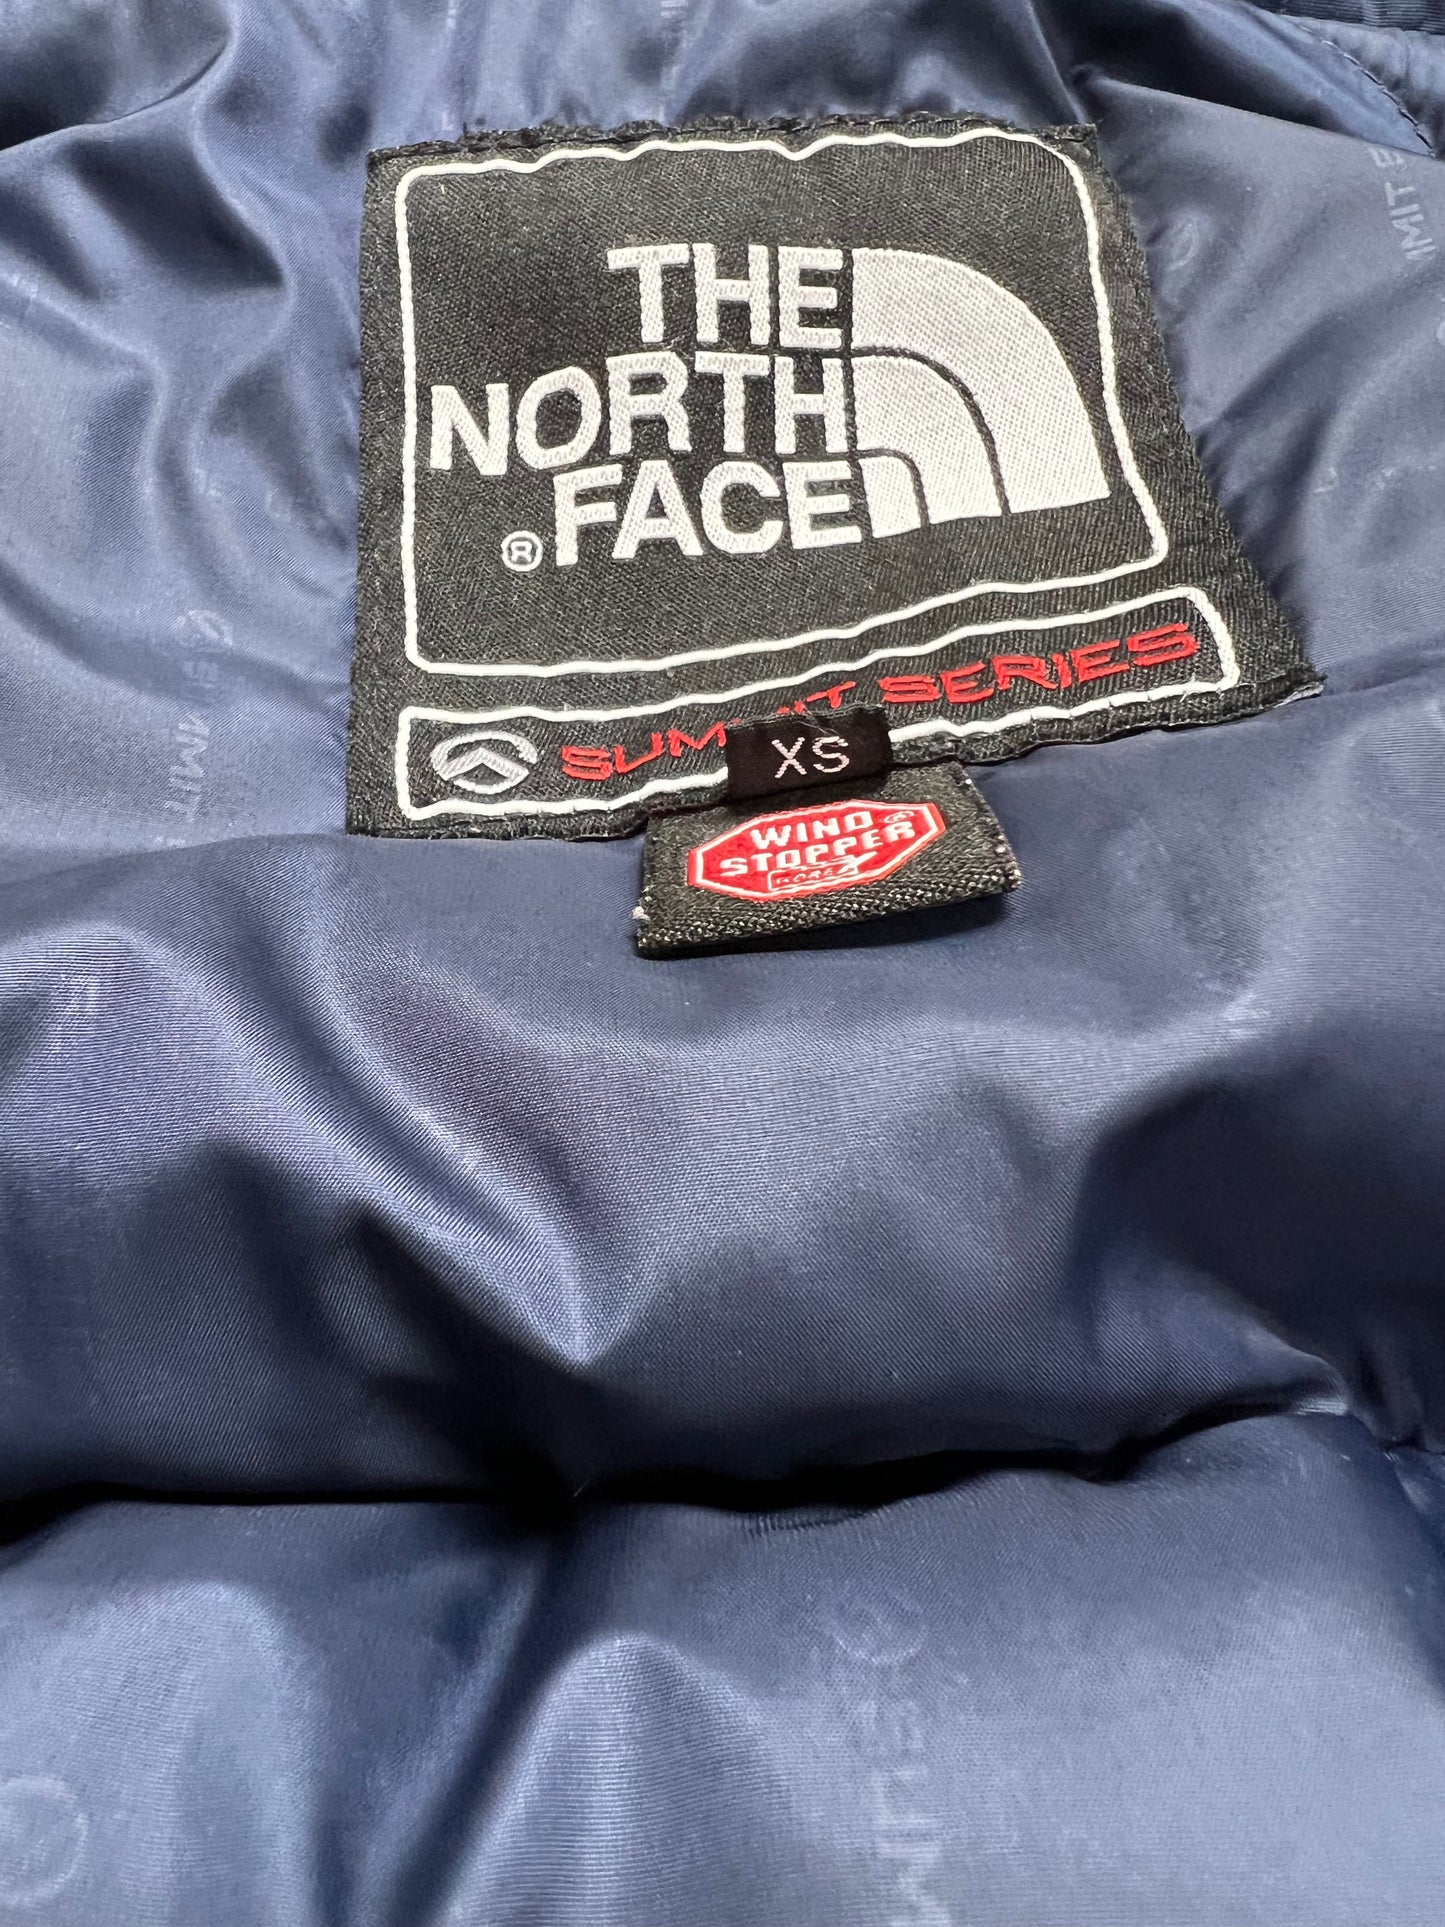 10045【THE NORTH FACE】ザノースフェイス メンズ サミットシリーズ バルトロライト ダウンジャケット ピンク 85